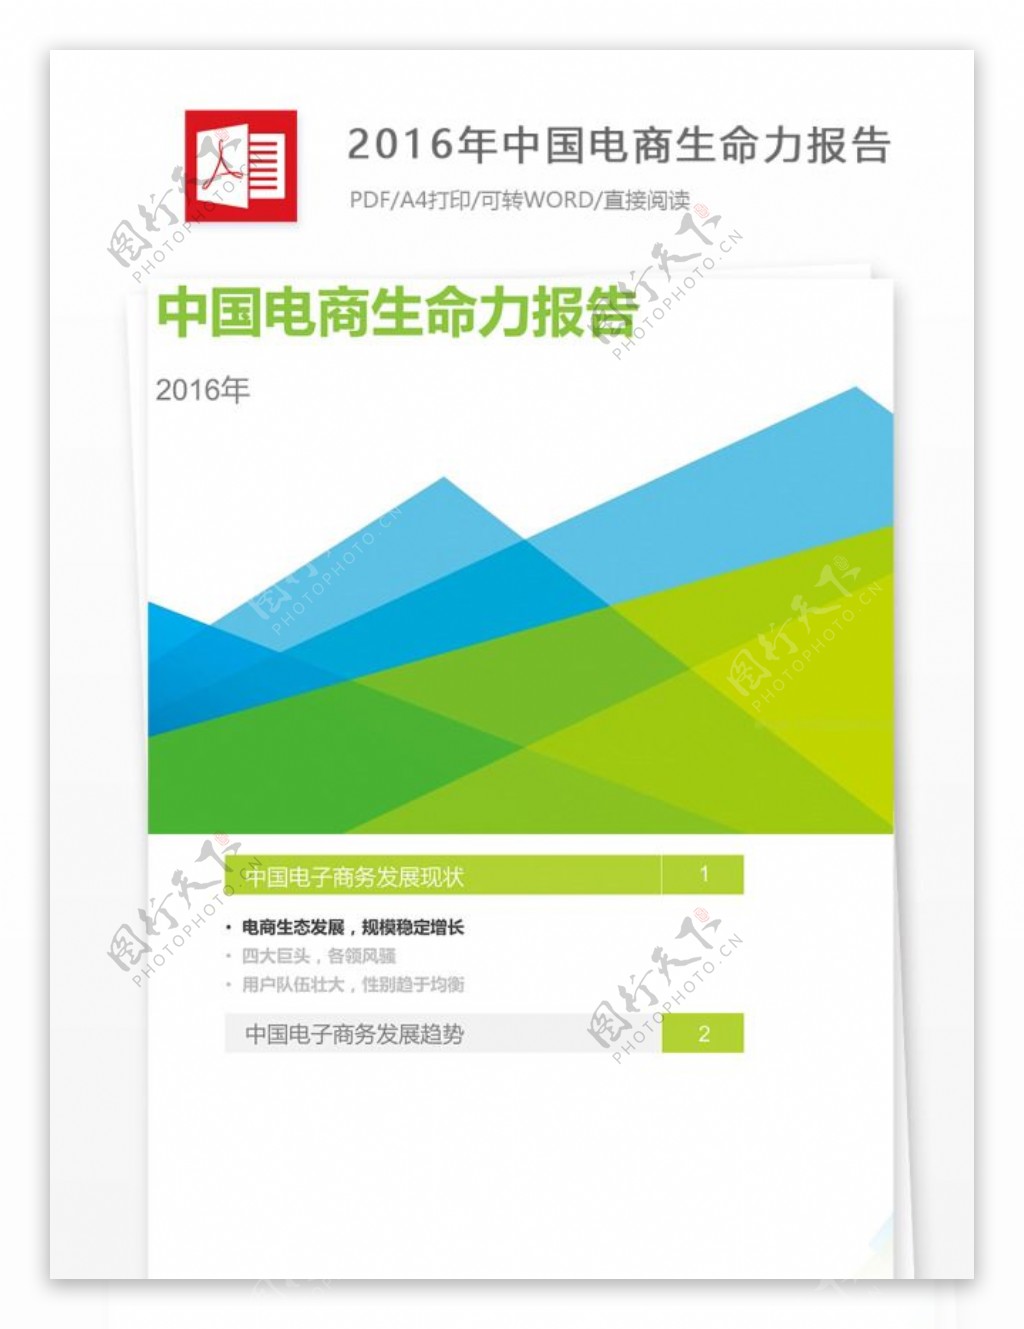 2016年中国电商生命力报告的公文格式